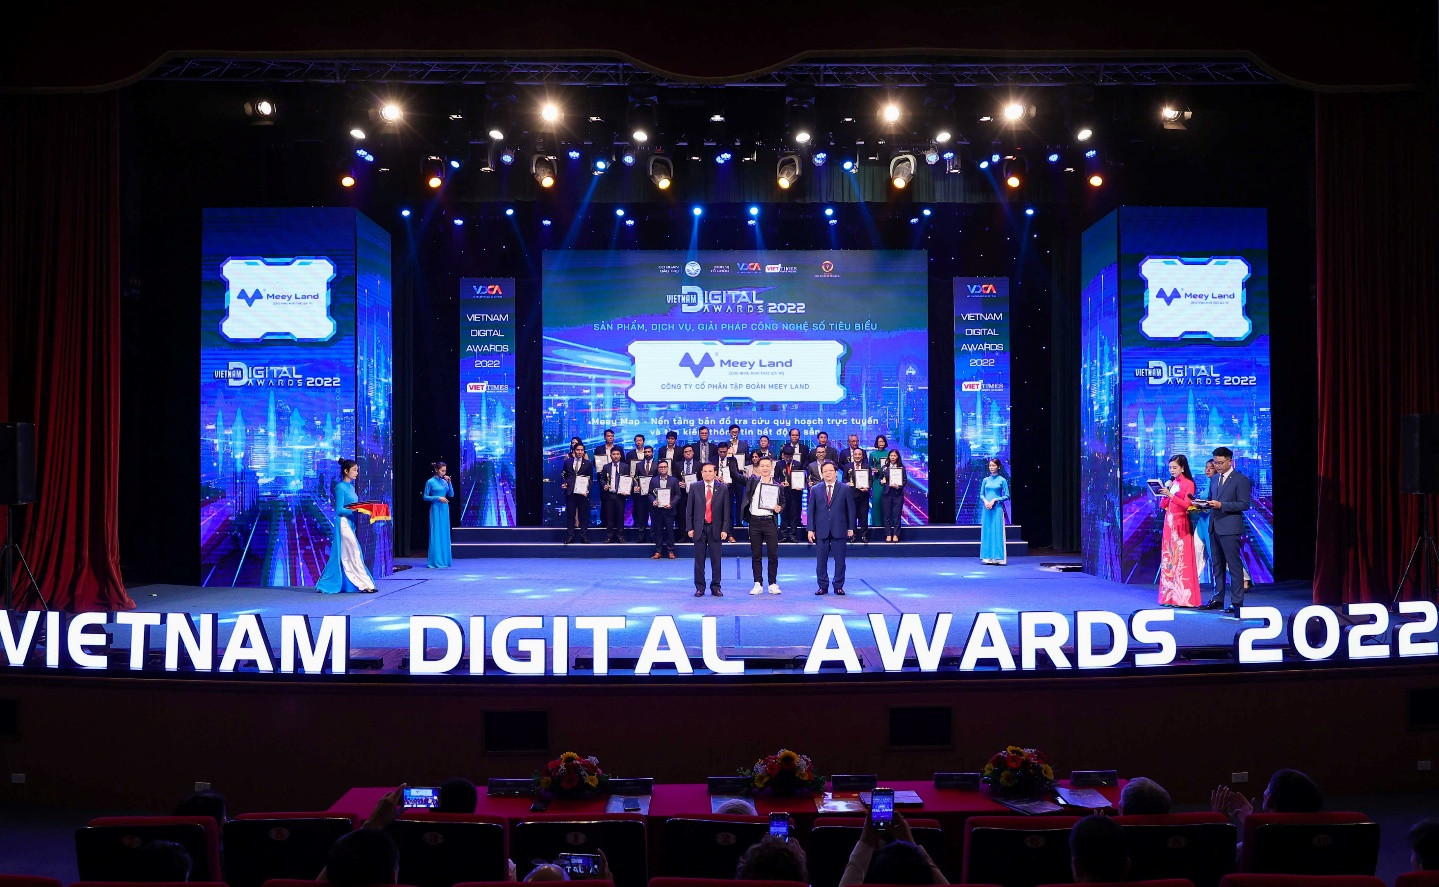 Meey Map được vinh danh tại Lễ trao Giải thưởng Chuyển đổi số Việt Nam – Vietnam Digital Awards năm 2022 (VDA 2022), hạng mục “Sản phẩm, Dịch vụ, Giải pháp Chuyển đổi số tiêu biểu”.